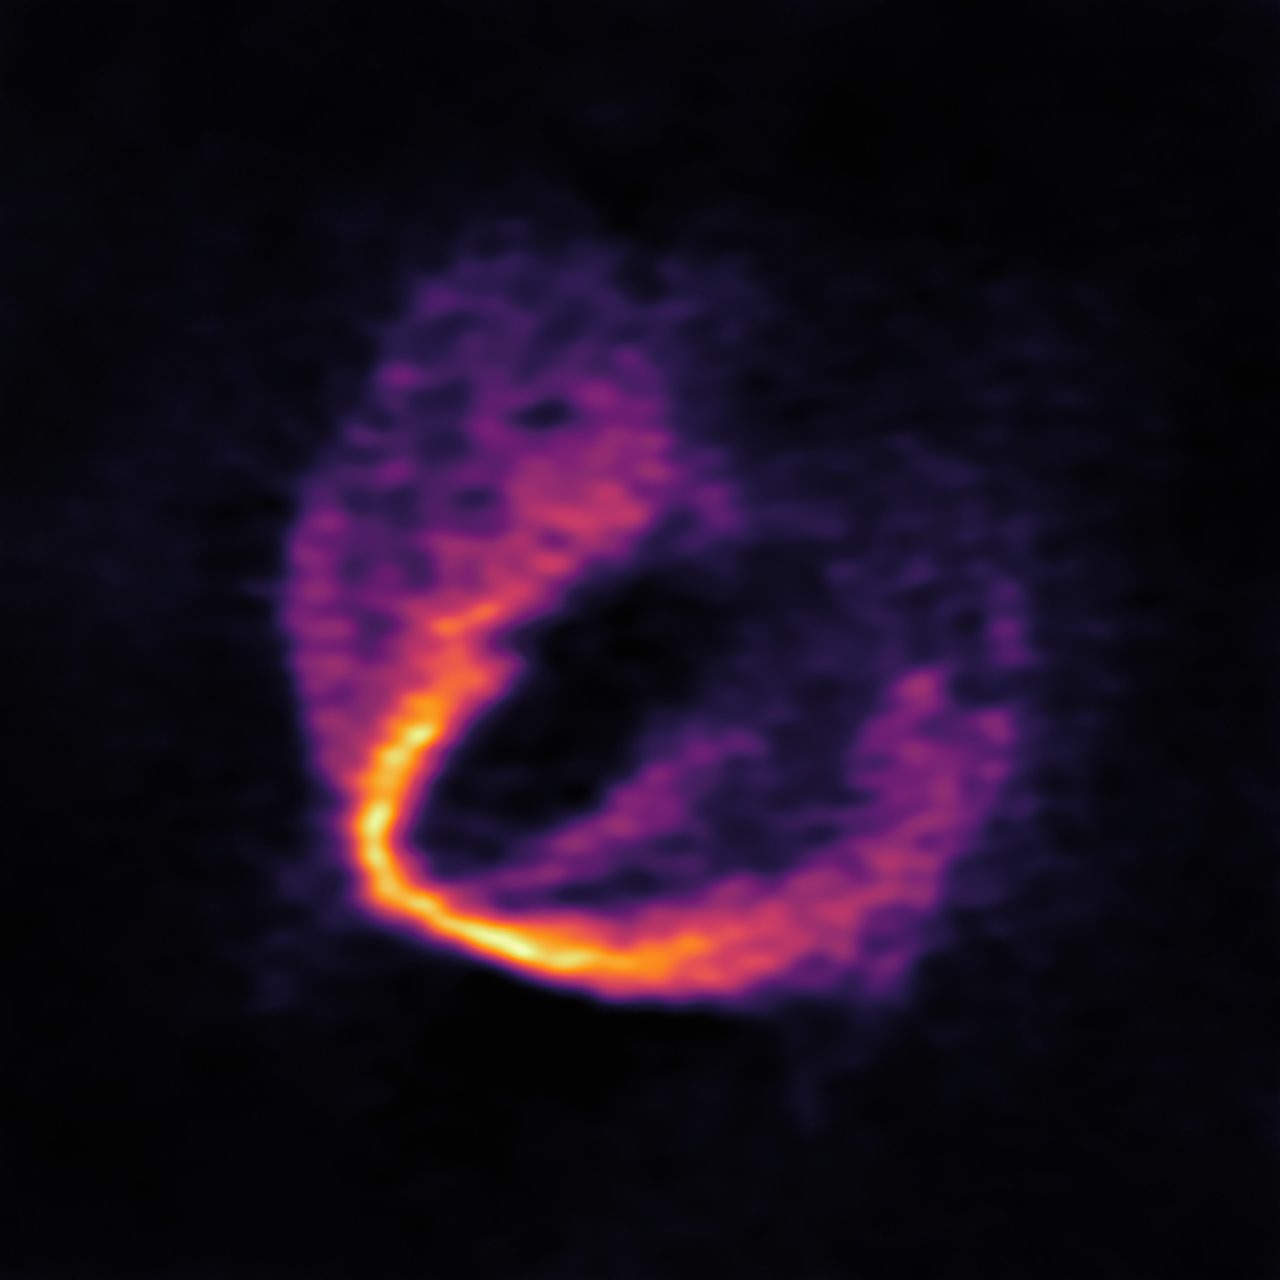 Registro do posicionamento da estrela bebê HD 163296 (Foto: Divulgação/ESO)